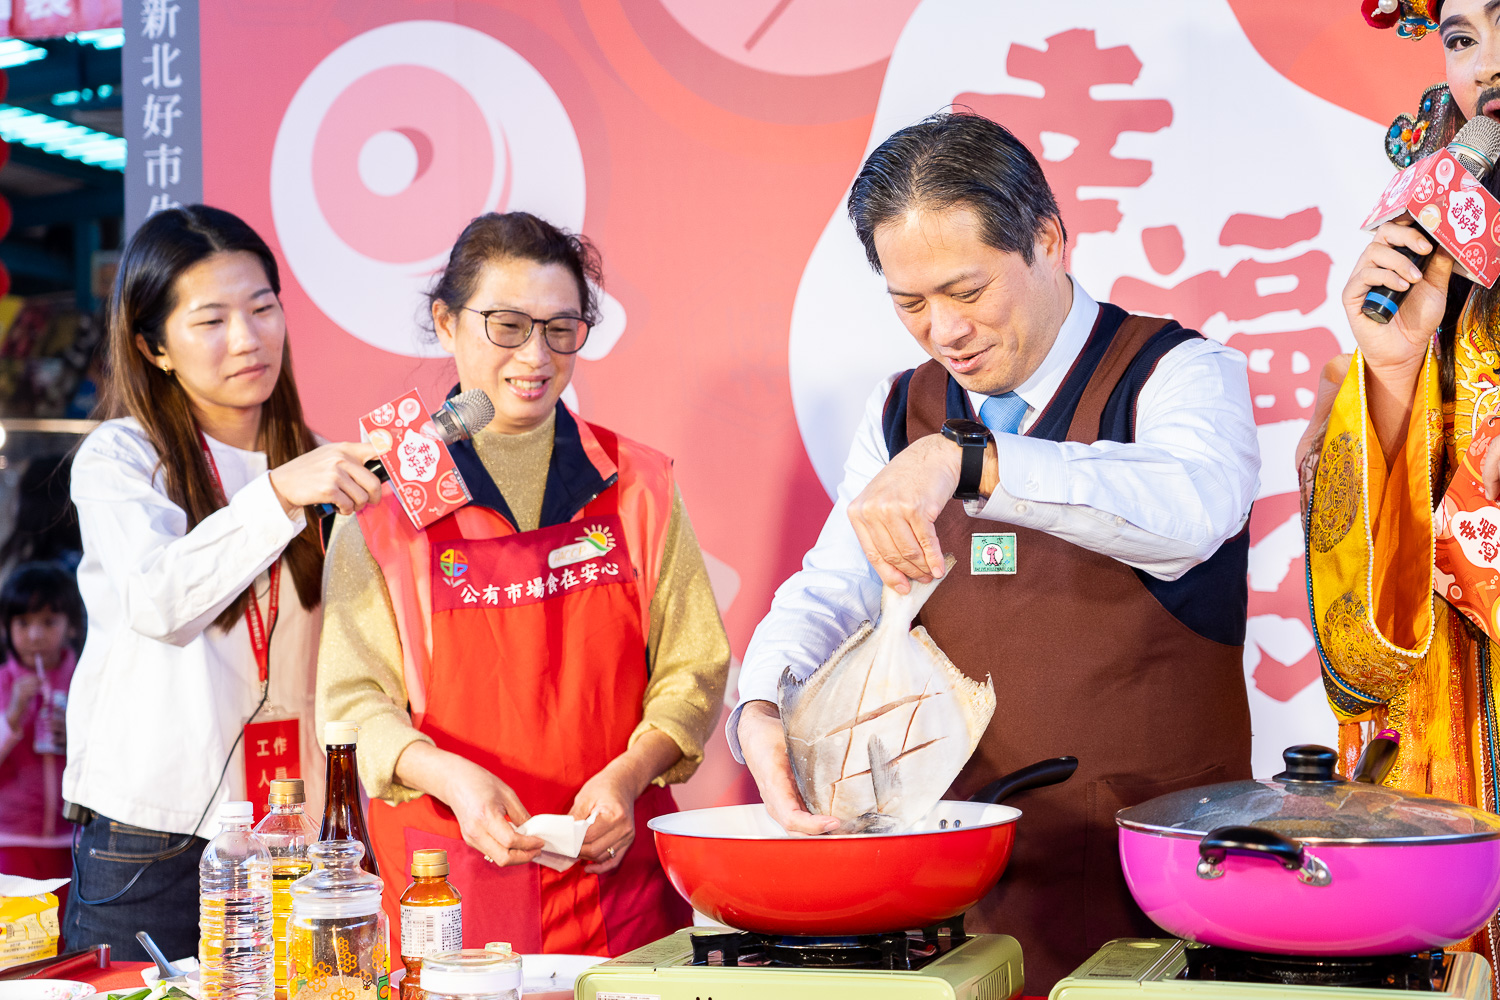 新北副市長吳明機現場捲袖煮上一道紅燒鯧魚，祝新北市的市民朋友們鴻運昌隆！